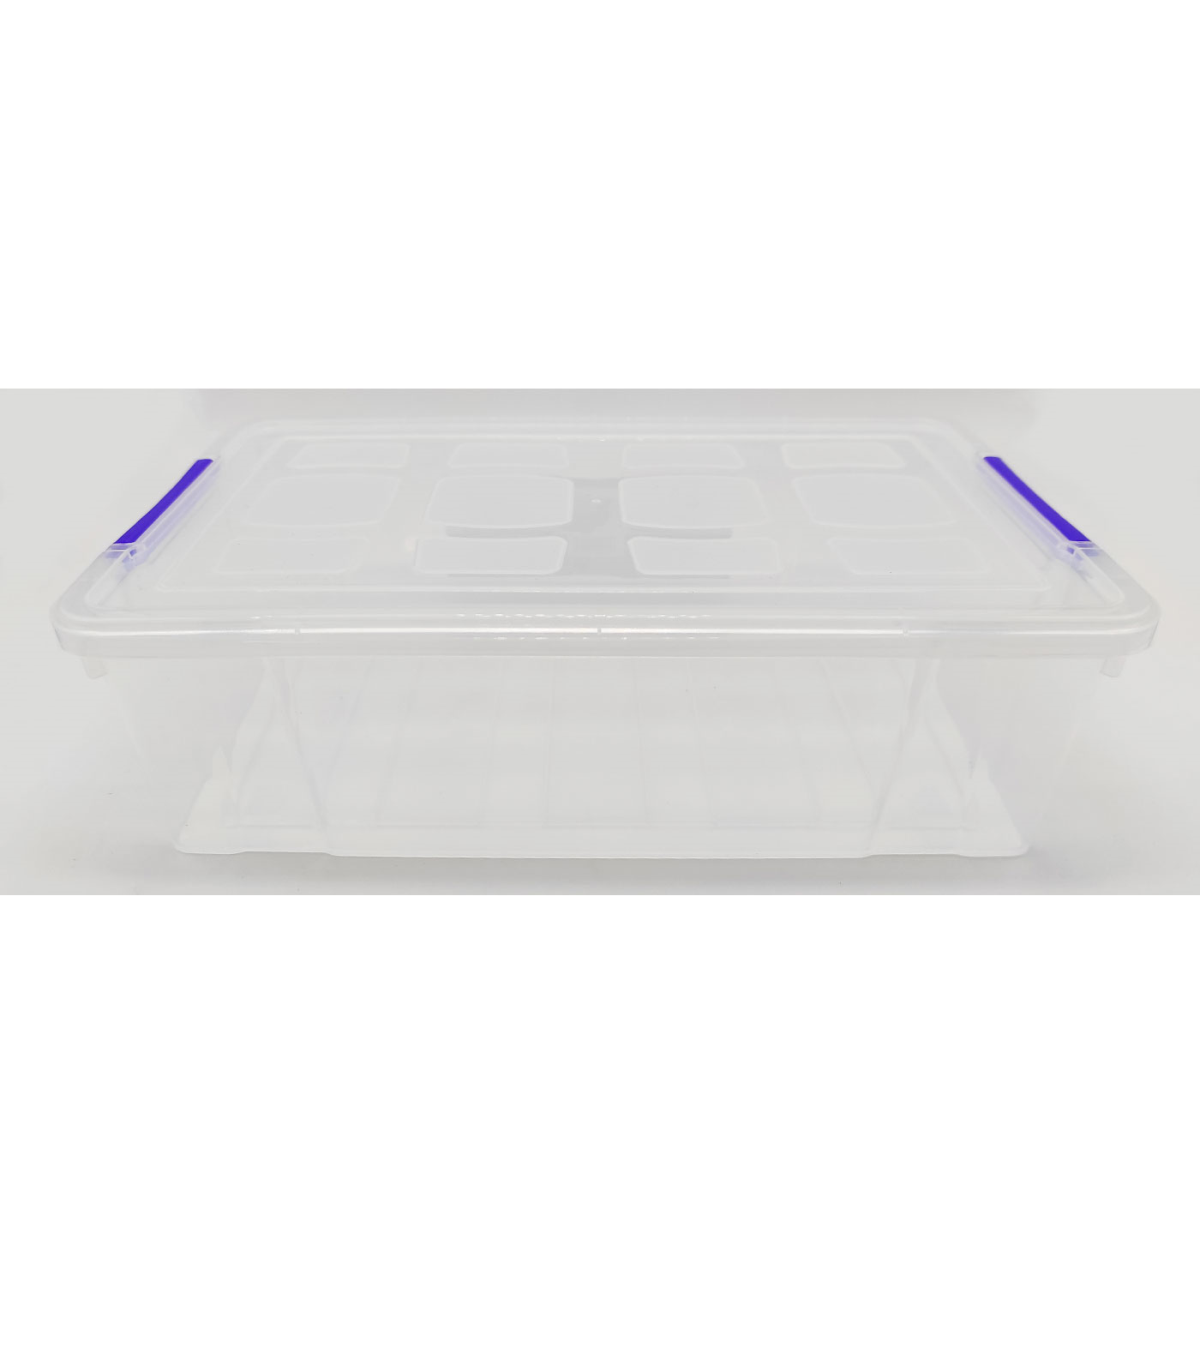 Tradineur - Caja de almacenaje de plástico transparente 2 litros, minicaja  de ordenación apilable con tapa 7,5 x 25,5 x 16,8 cm